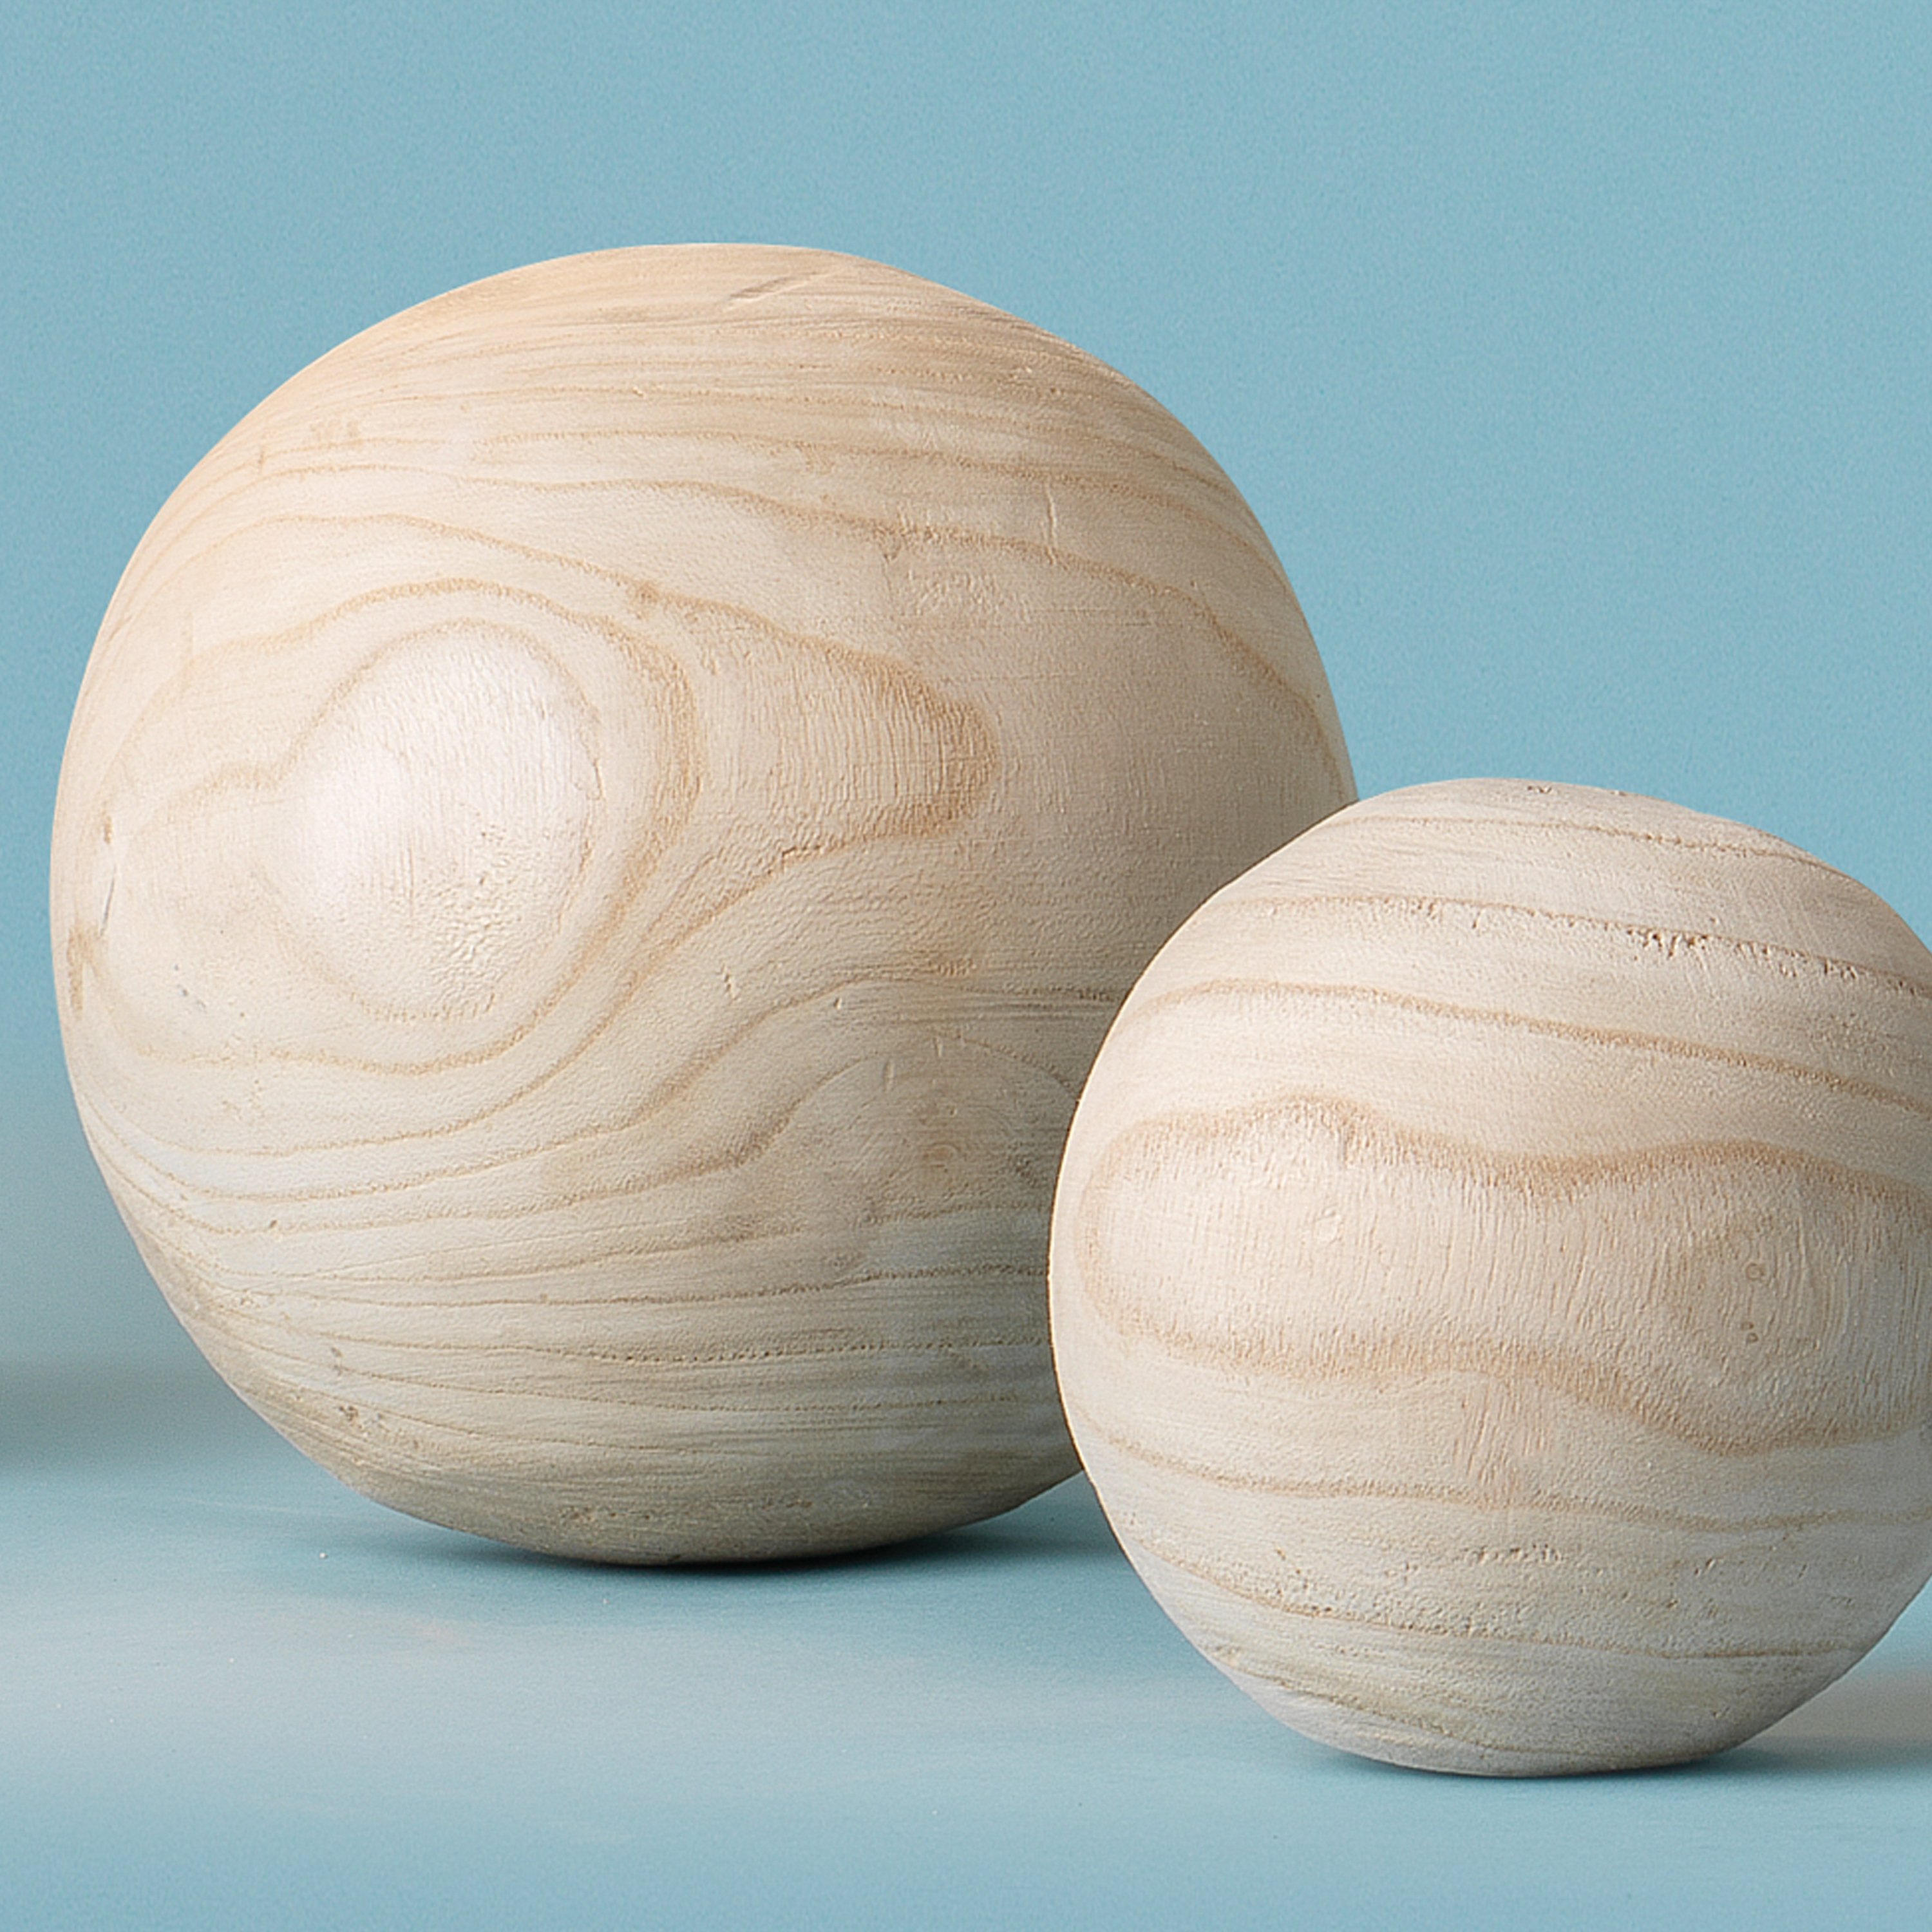 Malibu Wood Balls in Natural Wood (set of 3) - Scenario Home